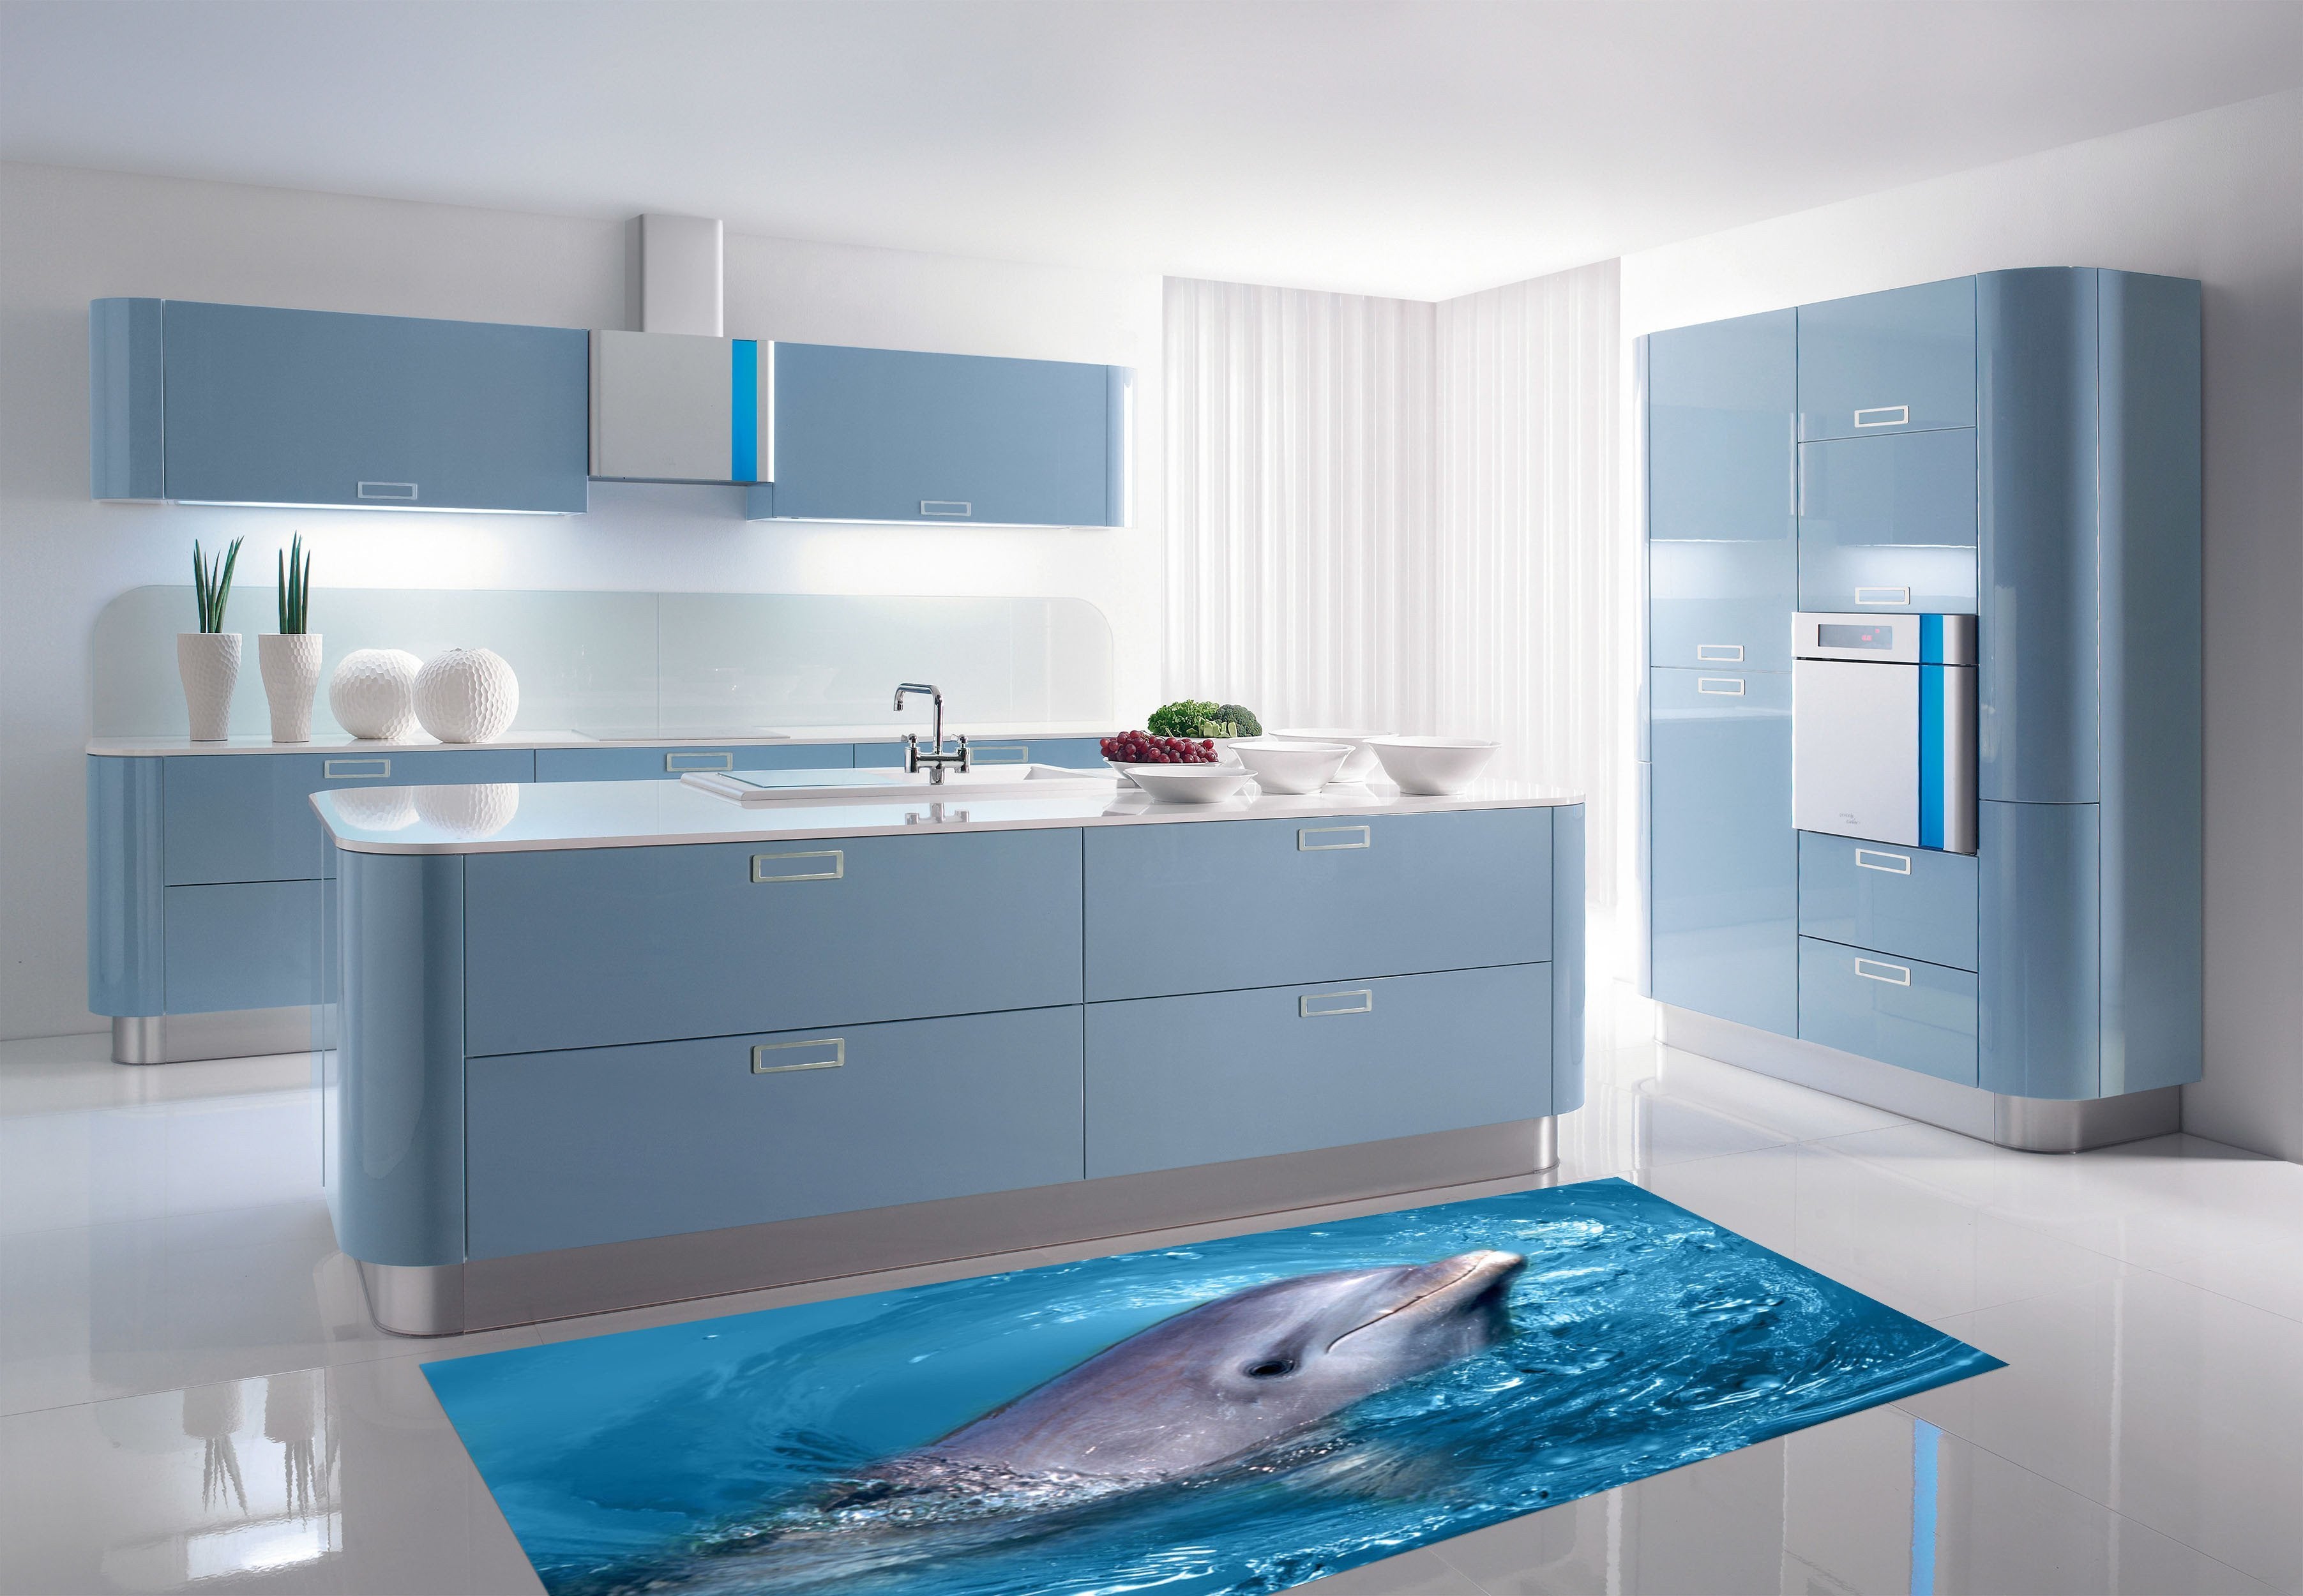 3D Dolphin Whirlpool 029 Kitchen Mat Floor Mural Wallpaper AJ Wallpaper 